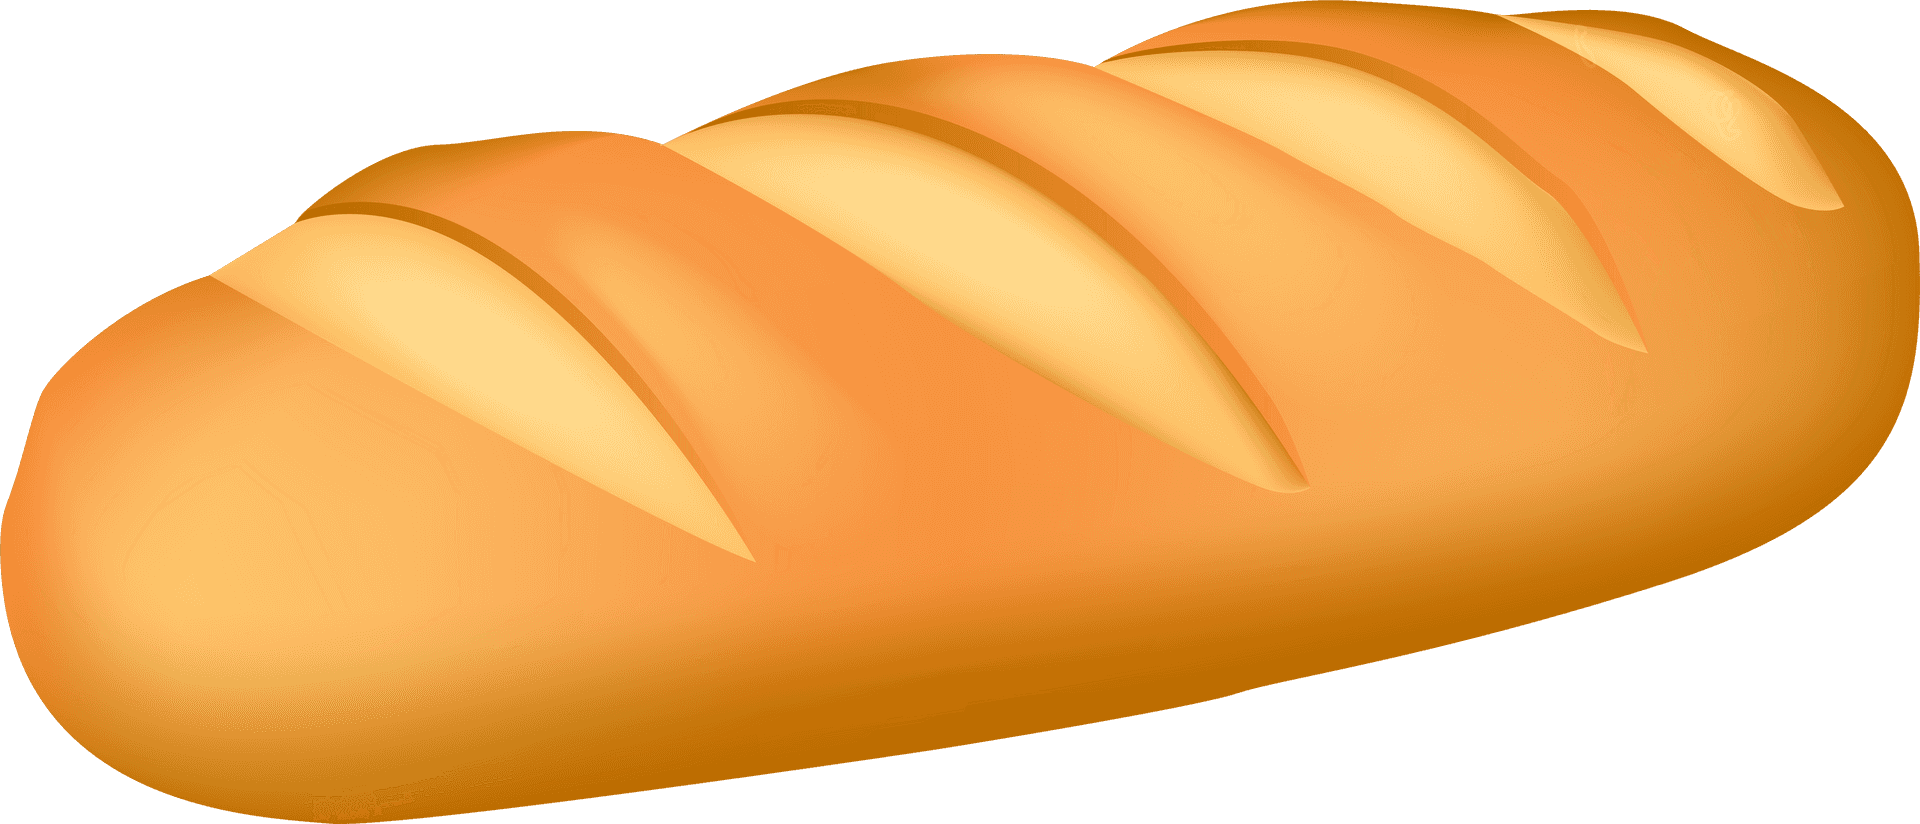 Golden Baked Baguette Illustration PNG